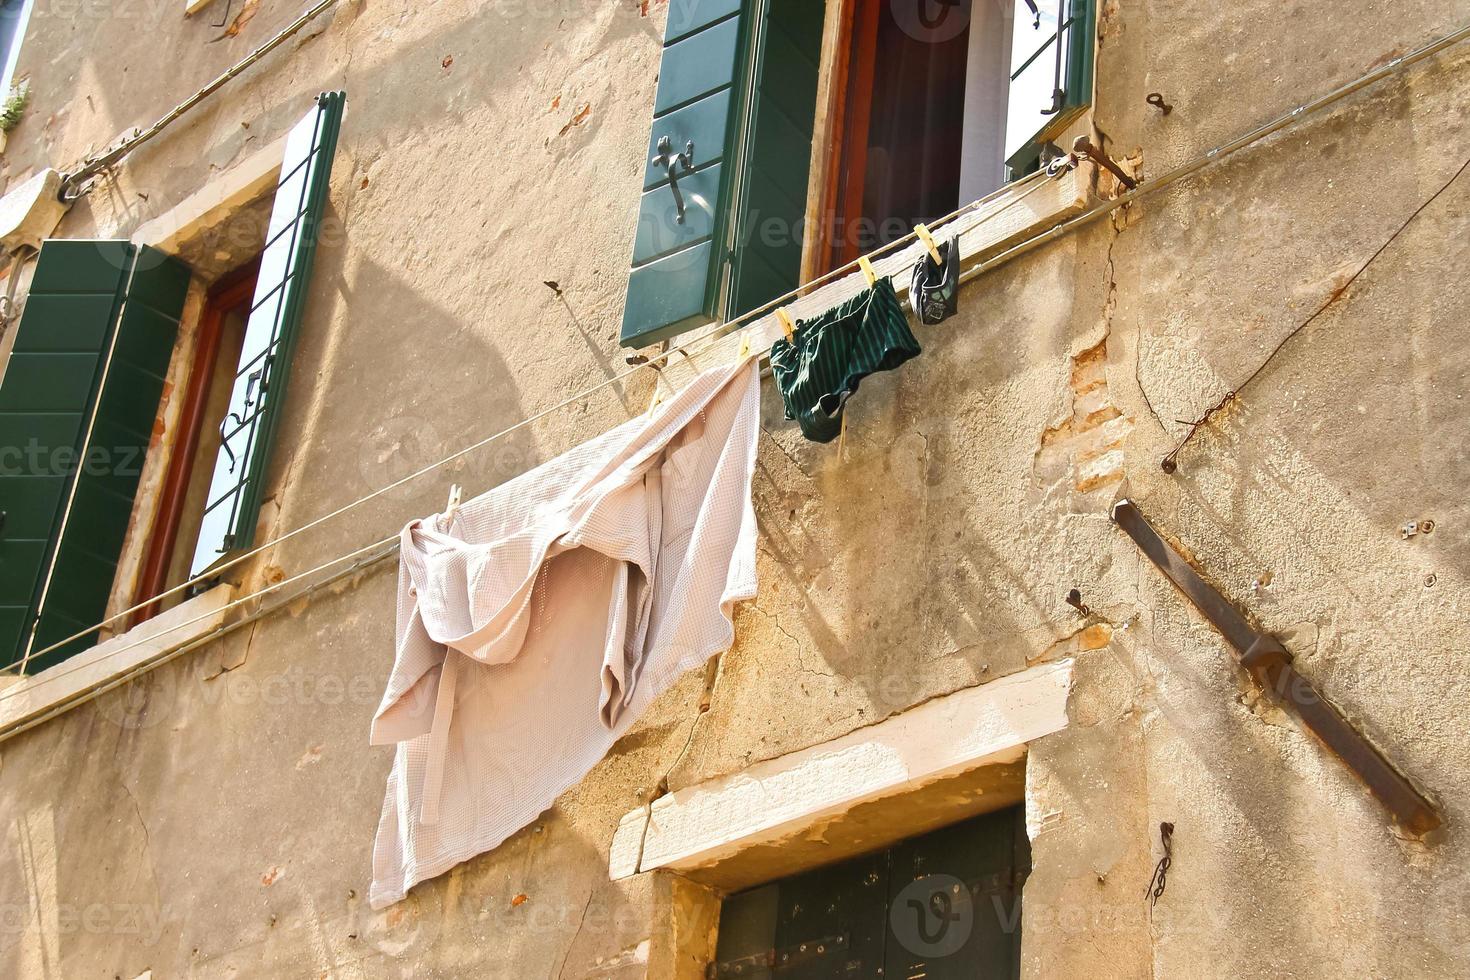 ropa interior en tendedero para secar fuera de la casa italiana 1115577  Foto de stock en Vecteezy